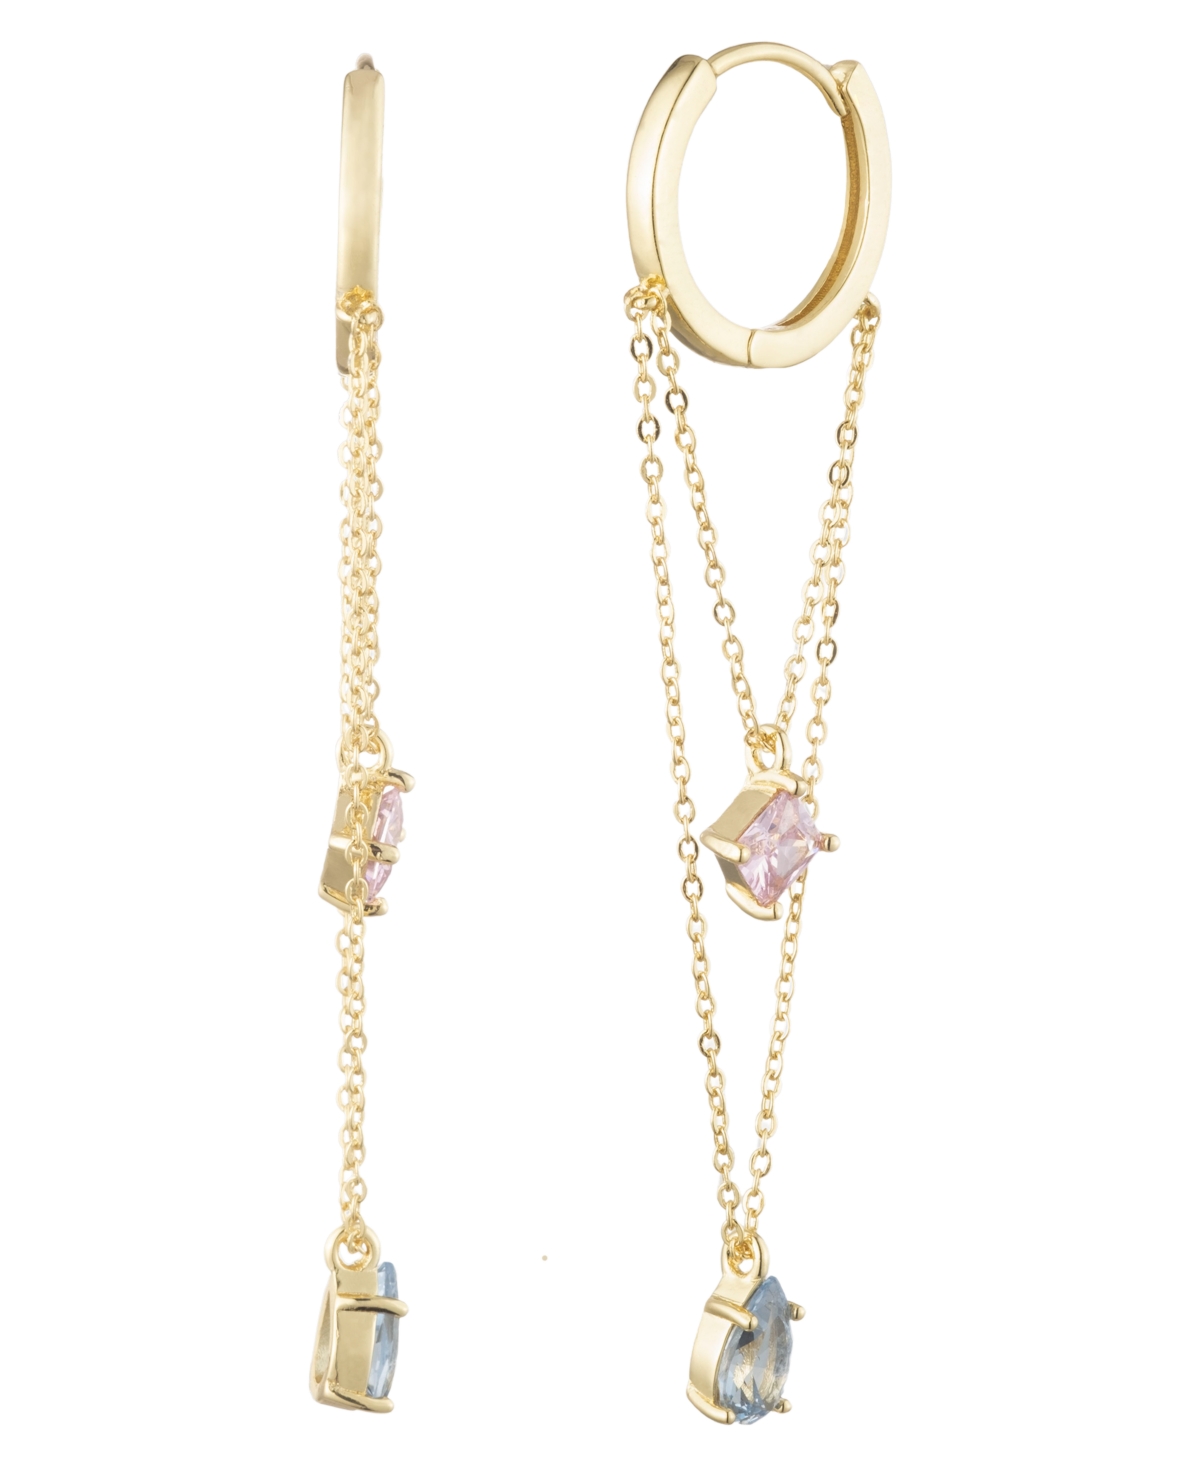 Bonheur Jewelry Vivienne Small Hoop Pink Topaz Crystal Earrings In Gold